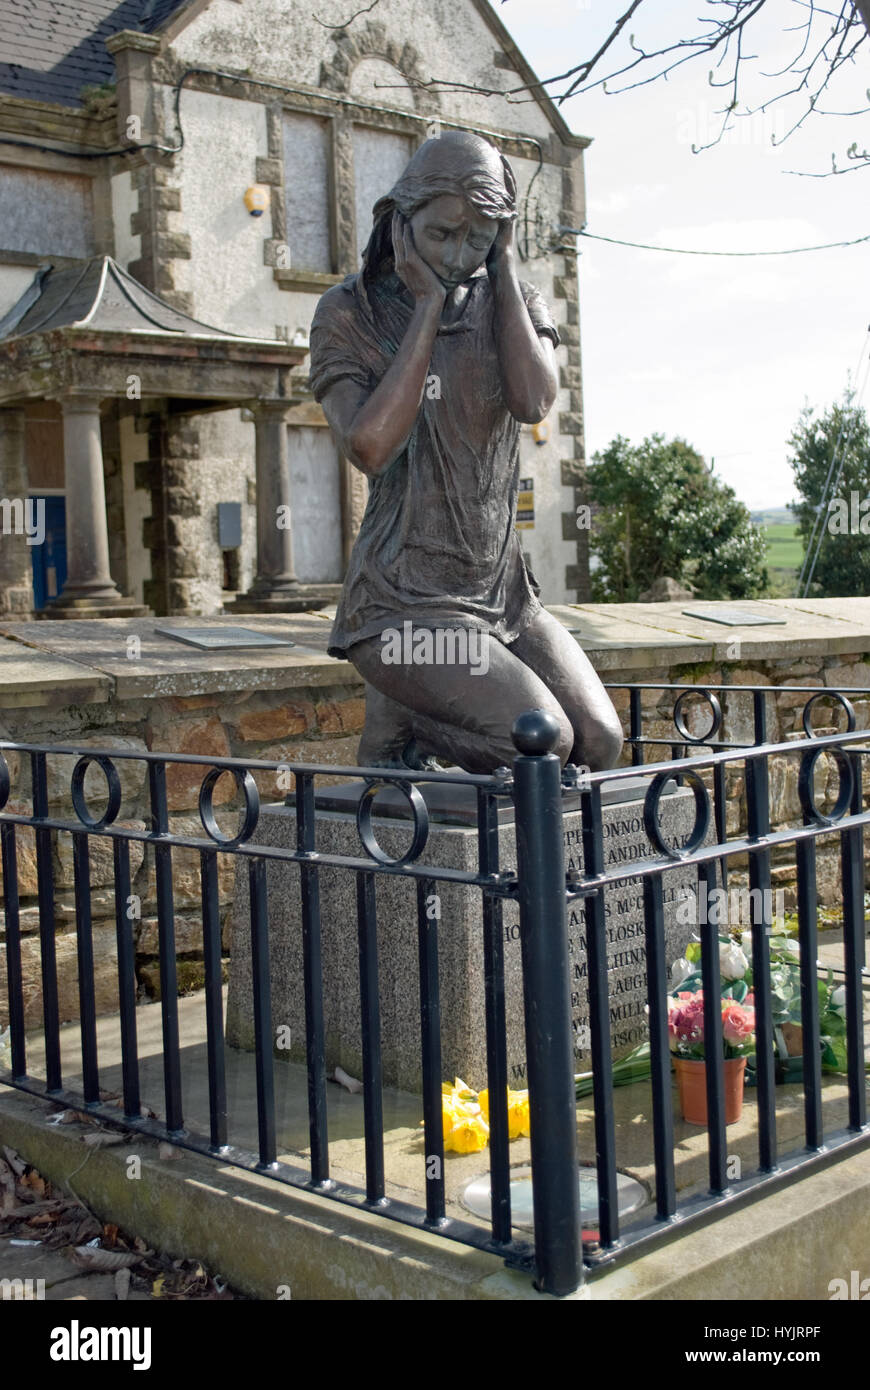 Memoriale di bronzo statua della ragazza commerating vittime del 1972 "bloody lunedi' attentato che ha provocato la morte di nove nel villaggio di claudy. Foto Stock